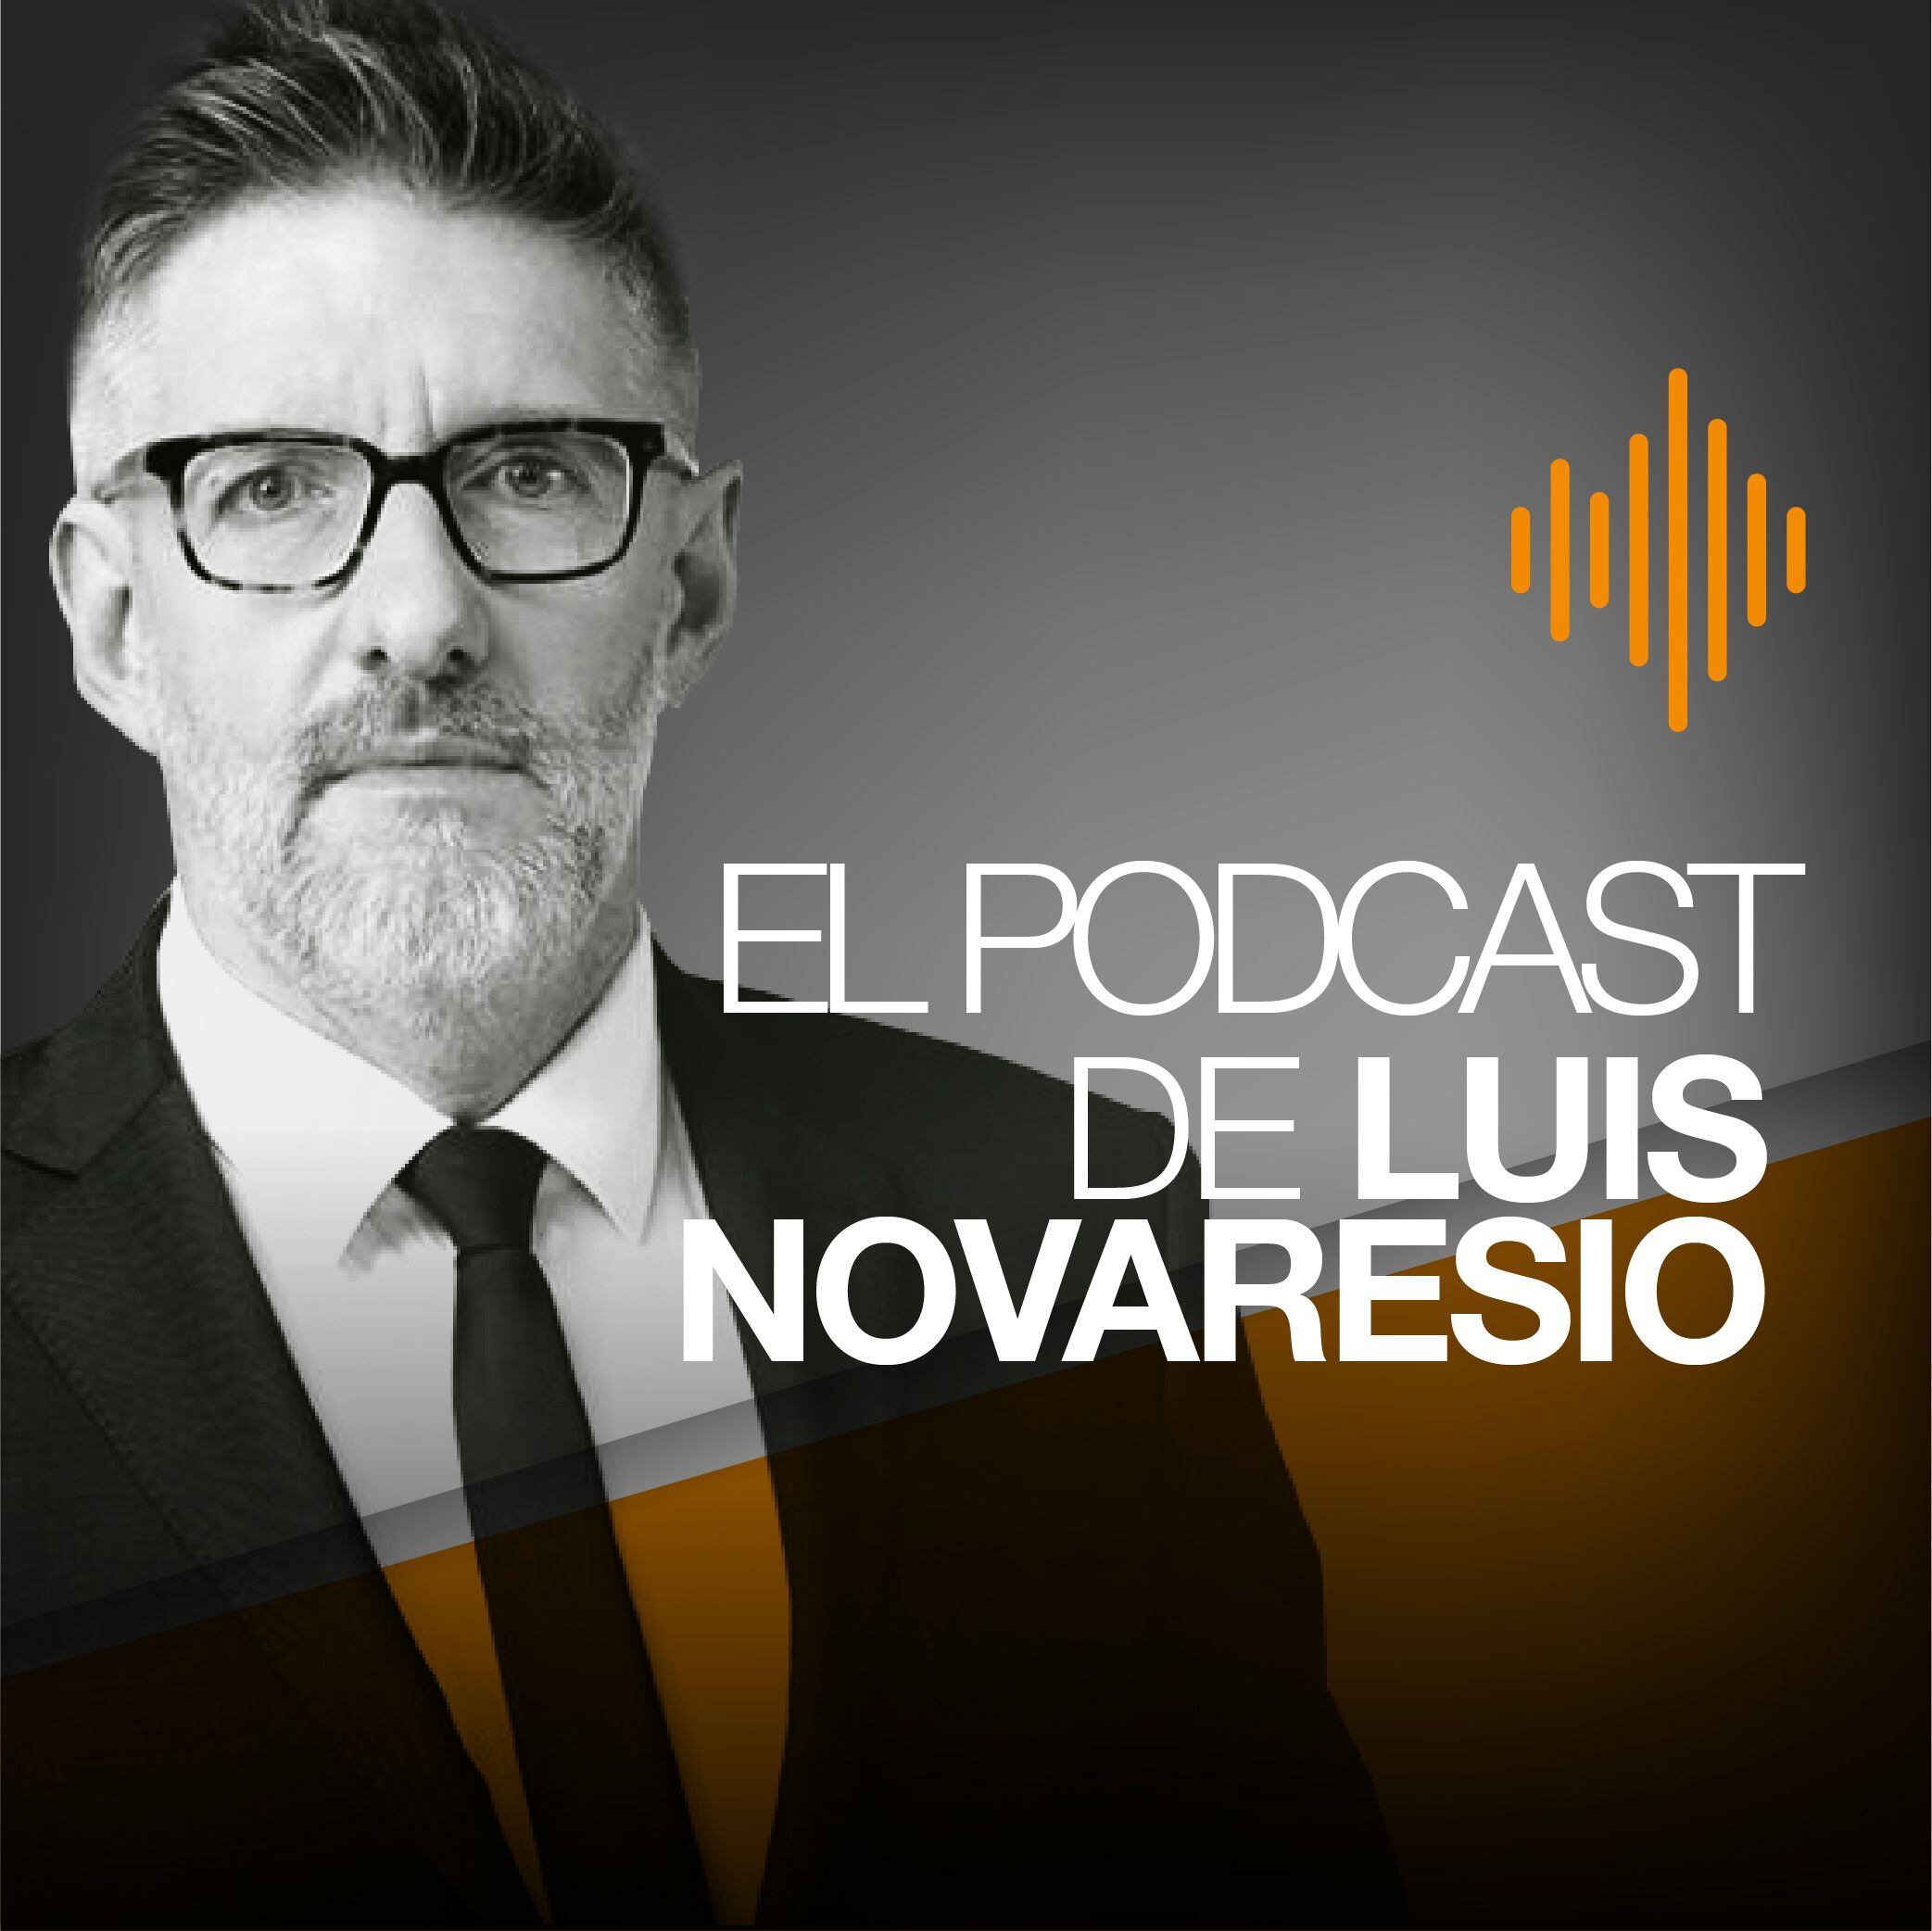 El podcast de luis novaresio